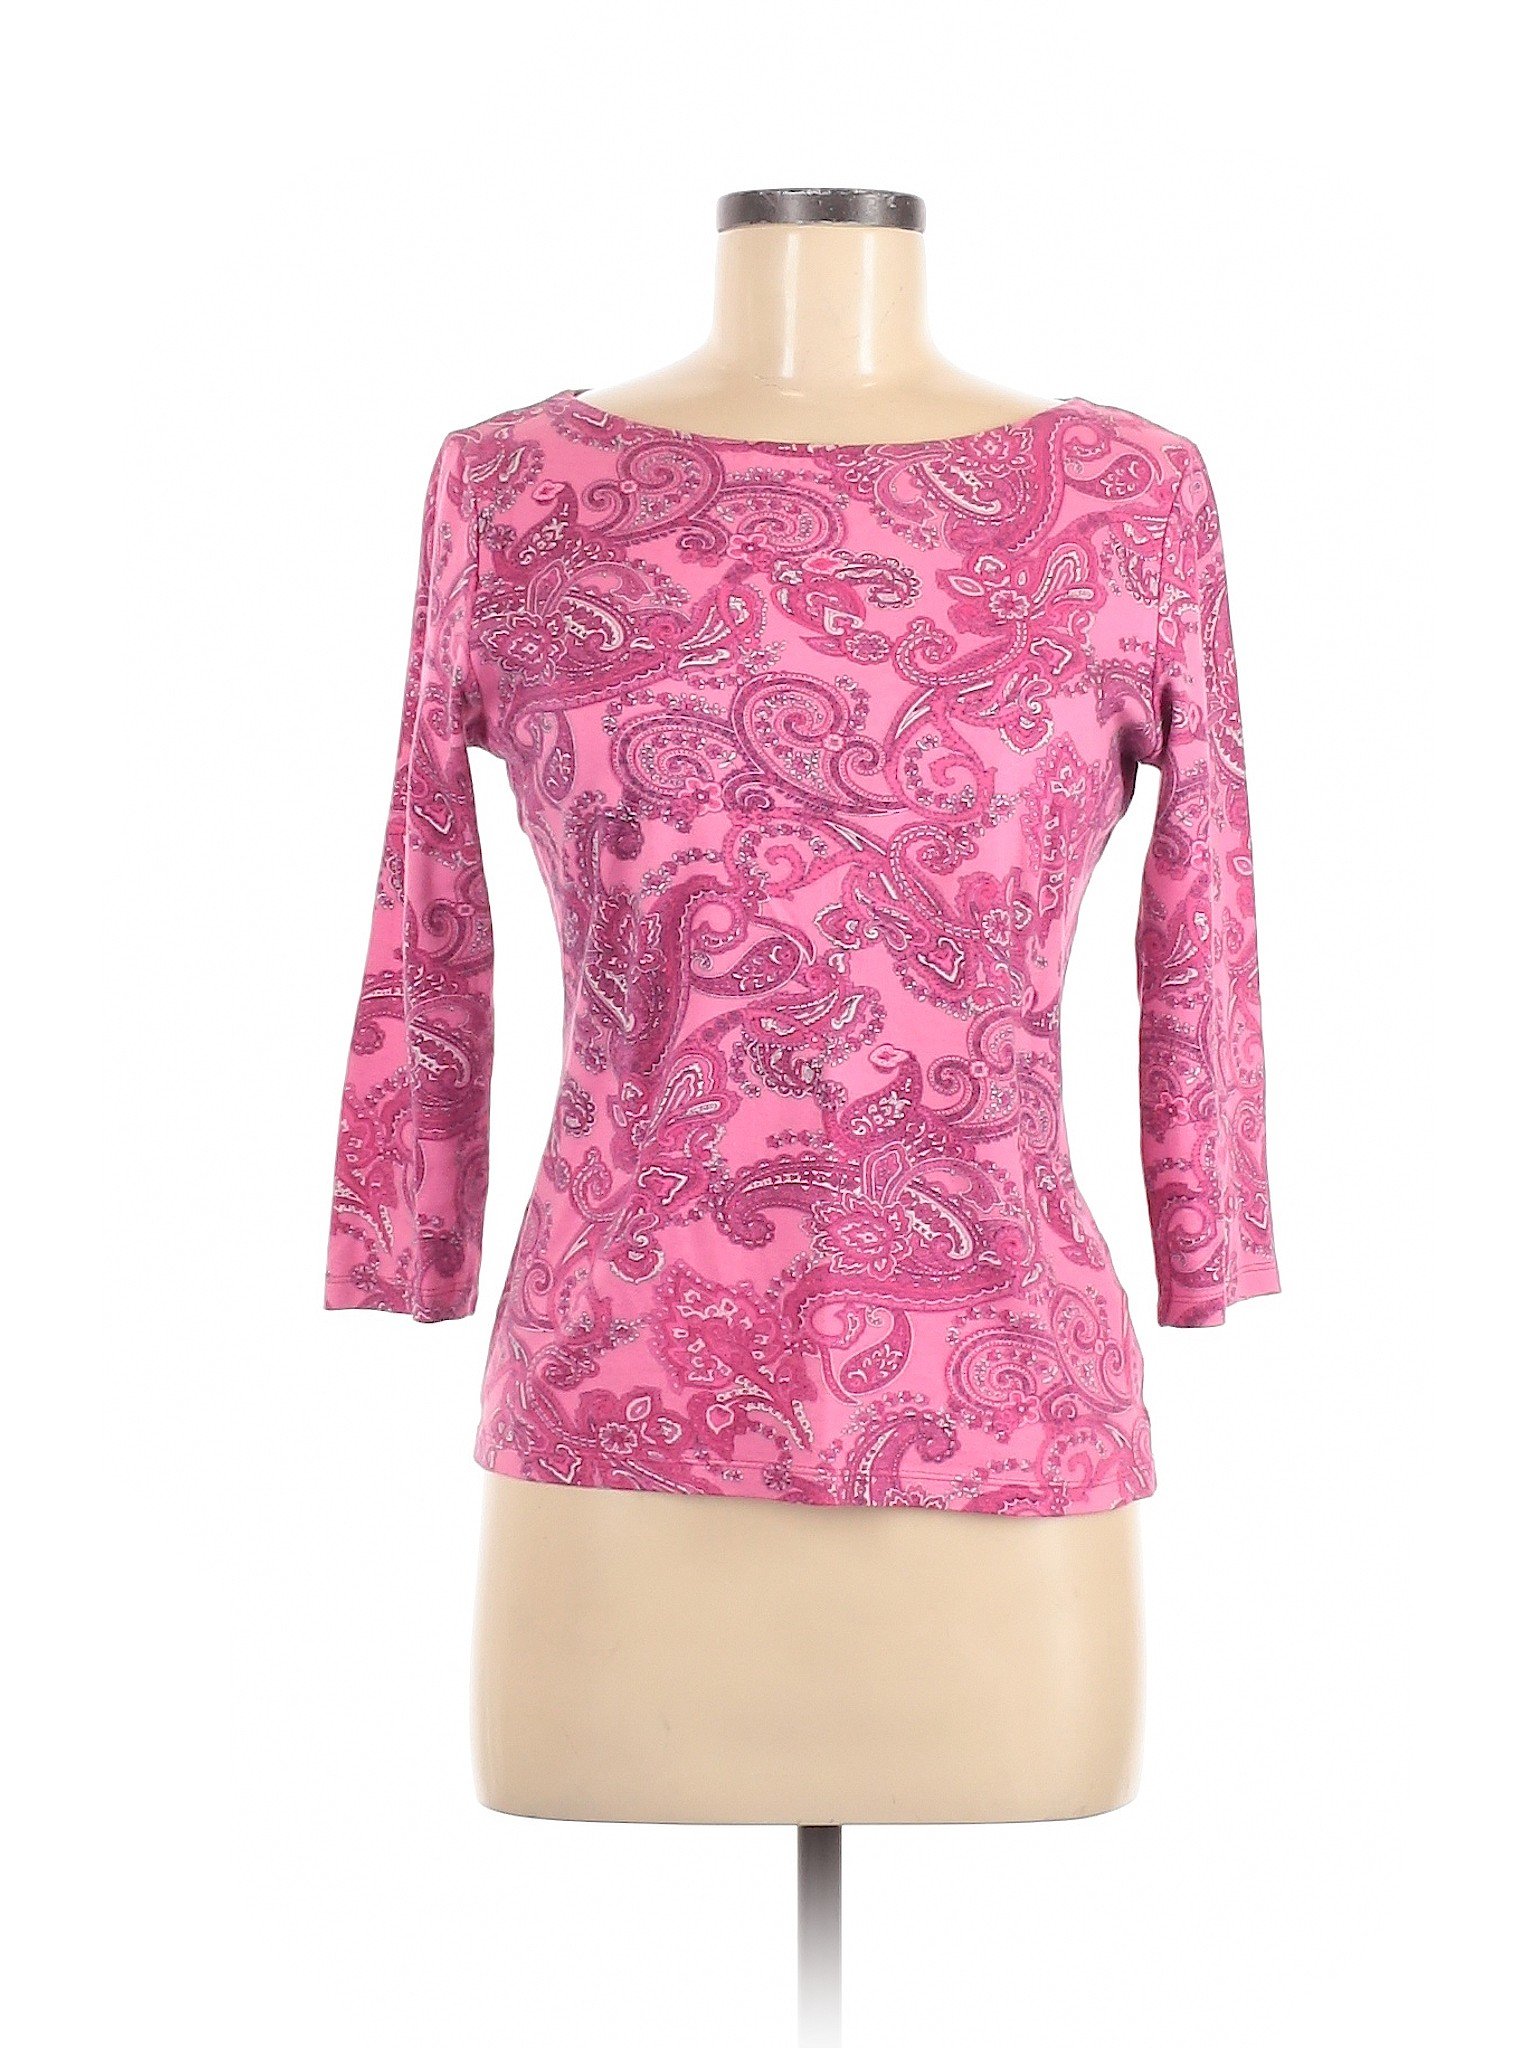 Jones New York Signature Women Pink 3/4 Sleeve T-Shirt S | eBay